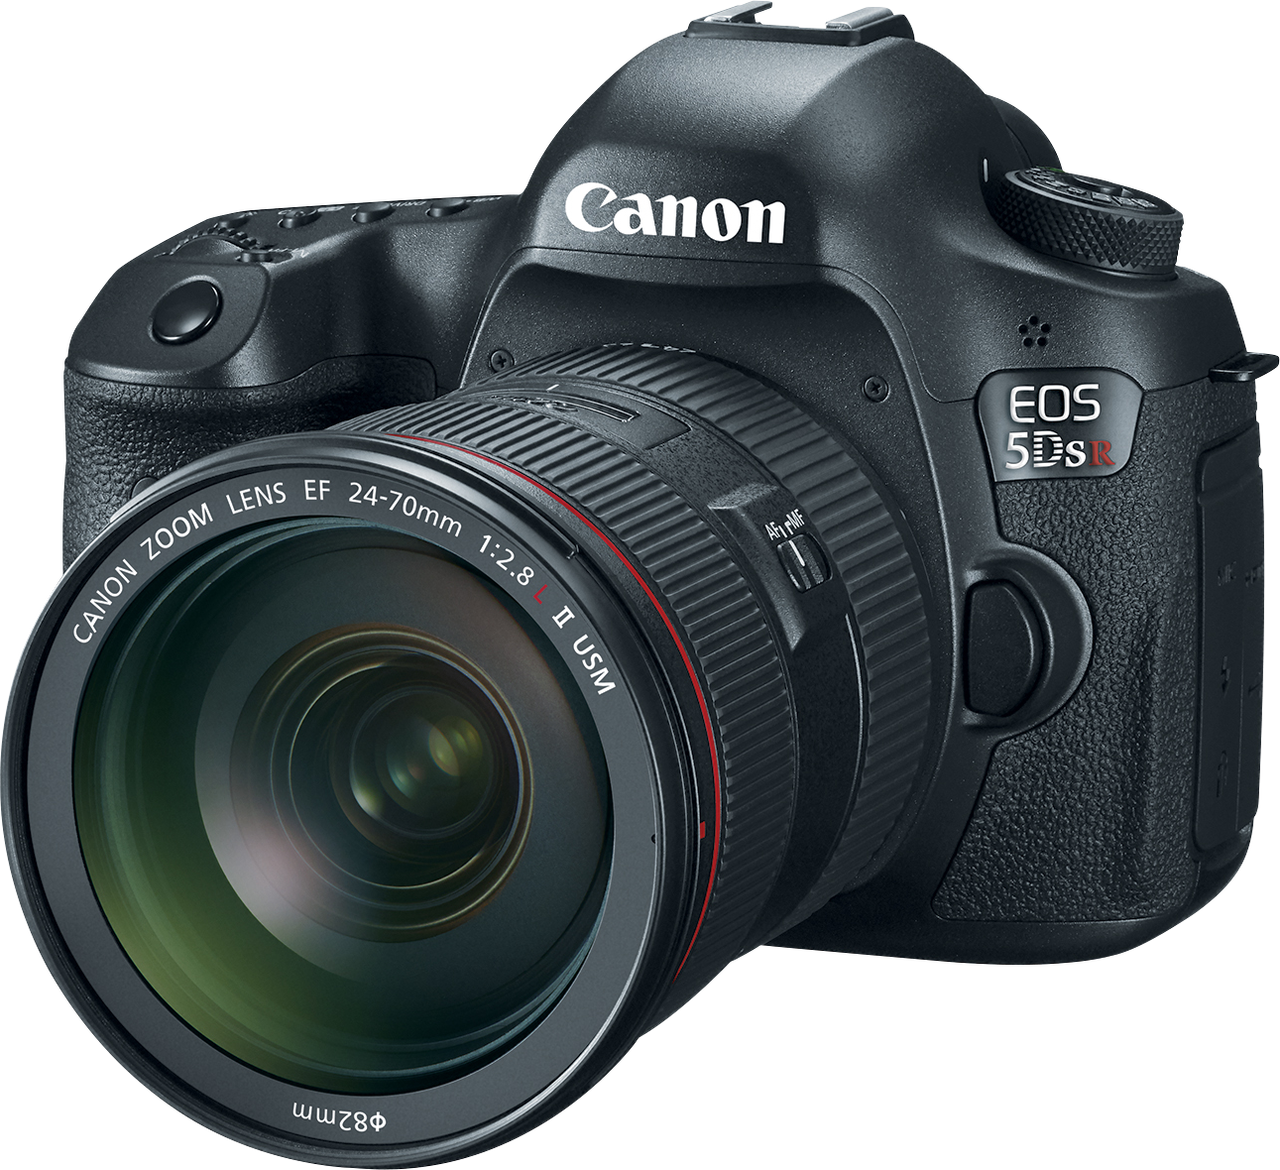 Canon EOS 5DS pozwala na wykonywanie zdjęć z interwałem czasowym oraz z podwójną ekspozycją